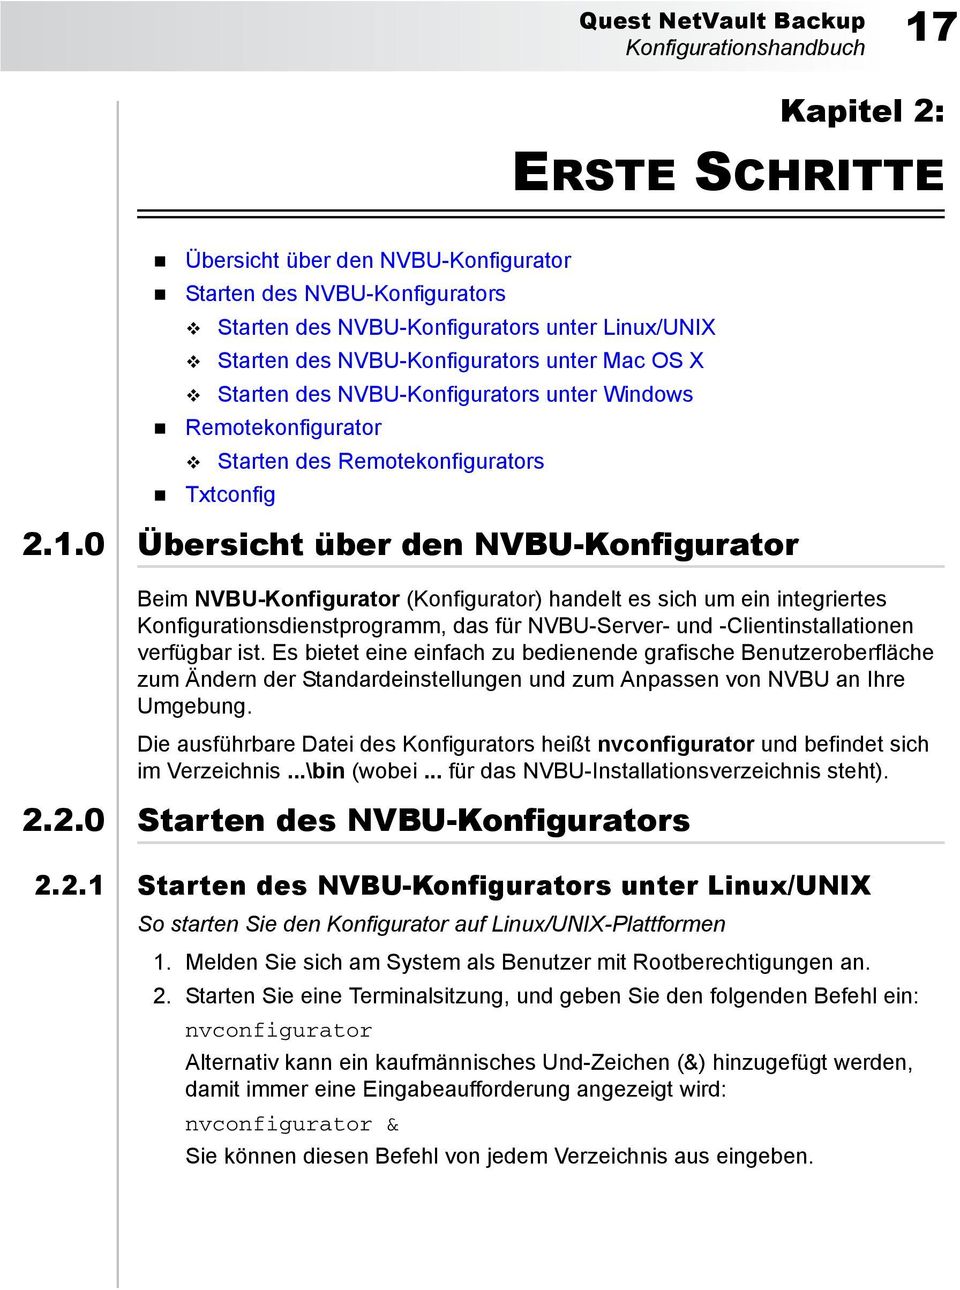 0 Übersicht über den NVBU-Konfigurator Beim NVBU-Konfigurator (Konfigurator) handelt es sich um ein integriertes Konfigurationsdienstprogramm, das für NVBU-Server- und -Clientinstallationen verfügbar